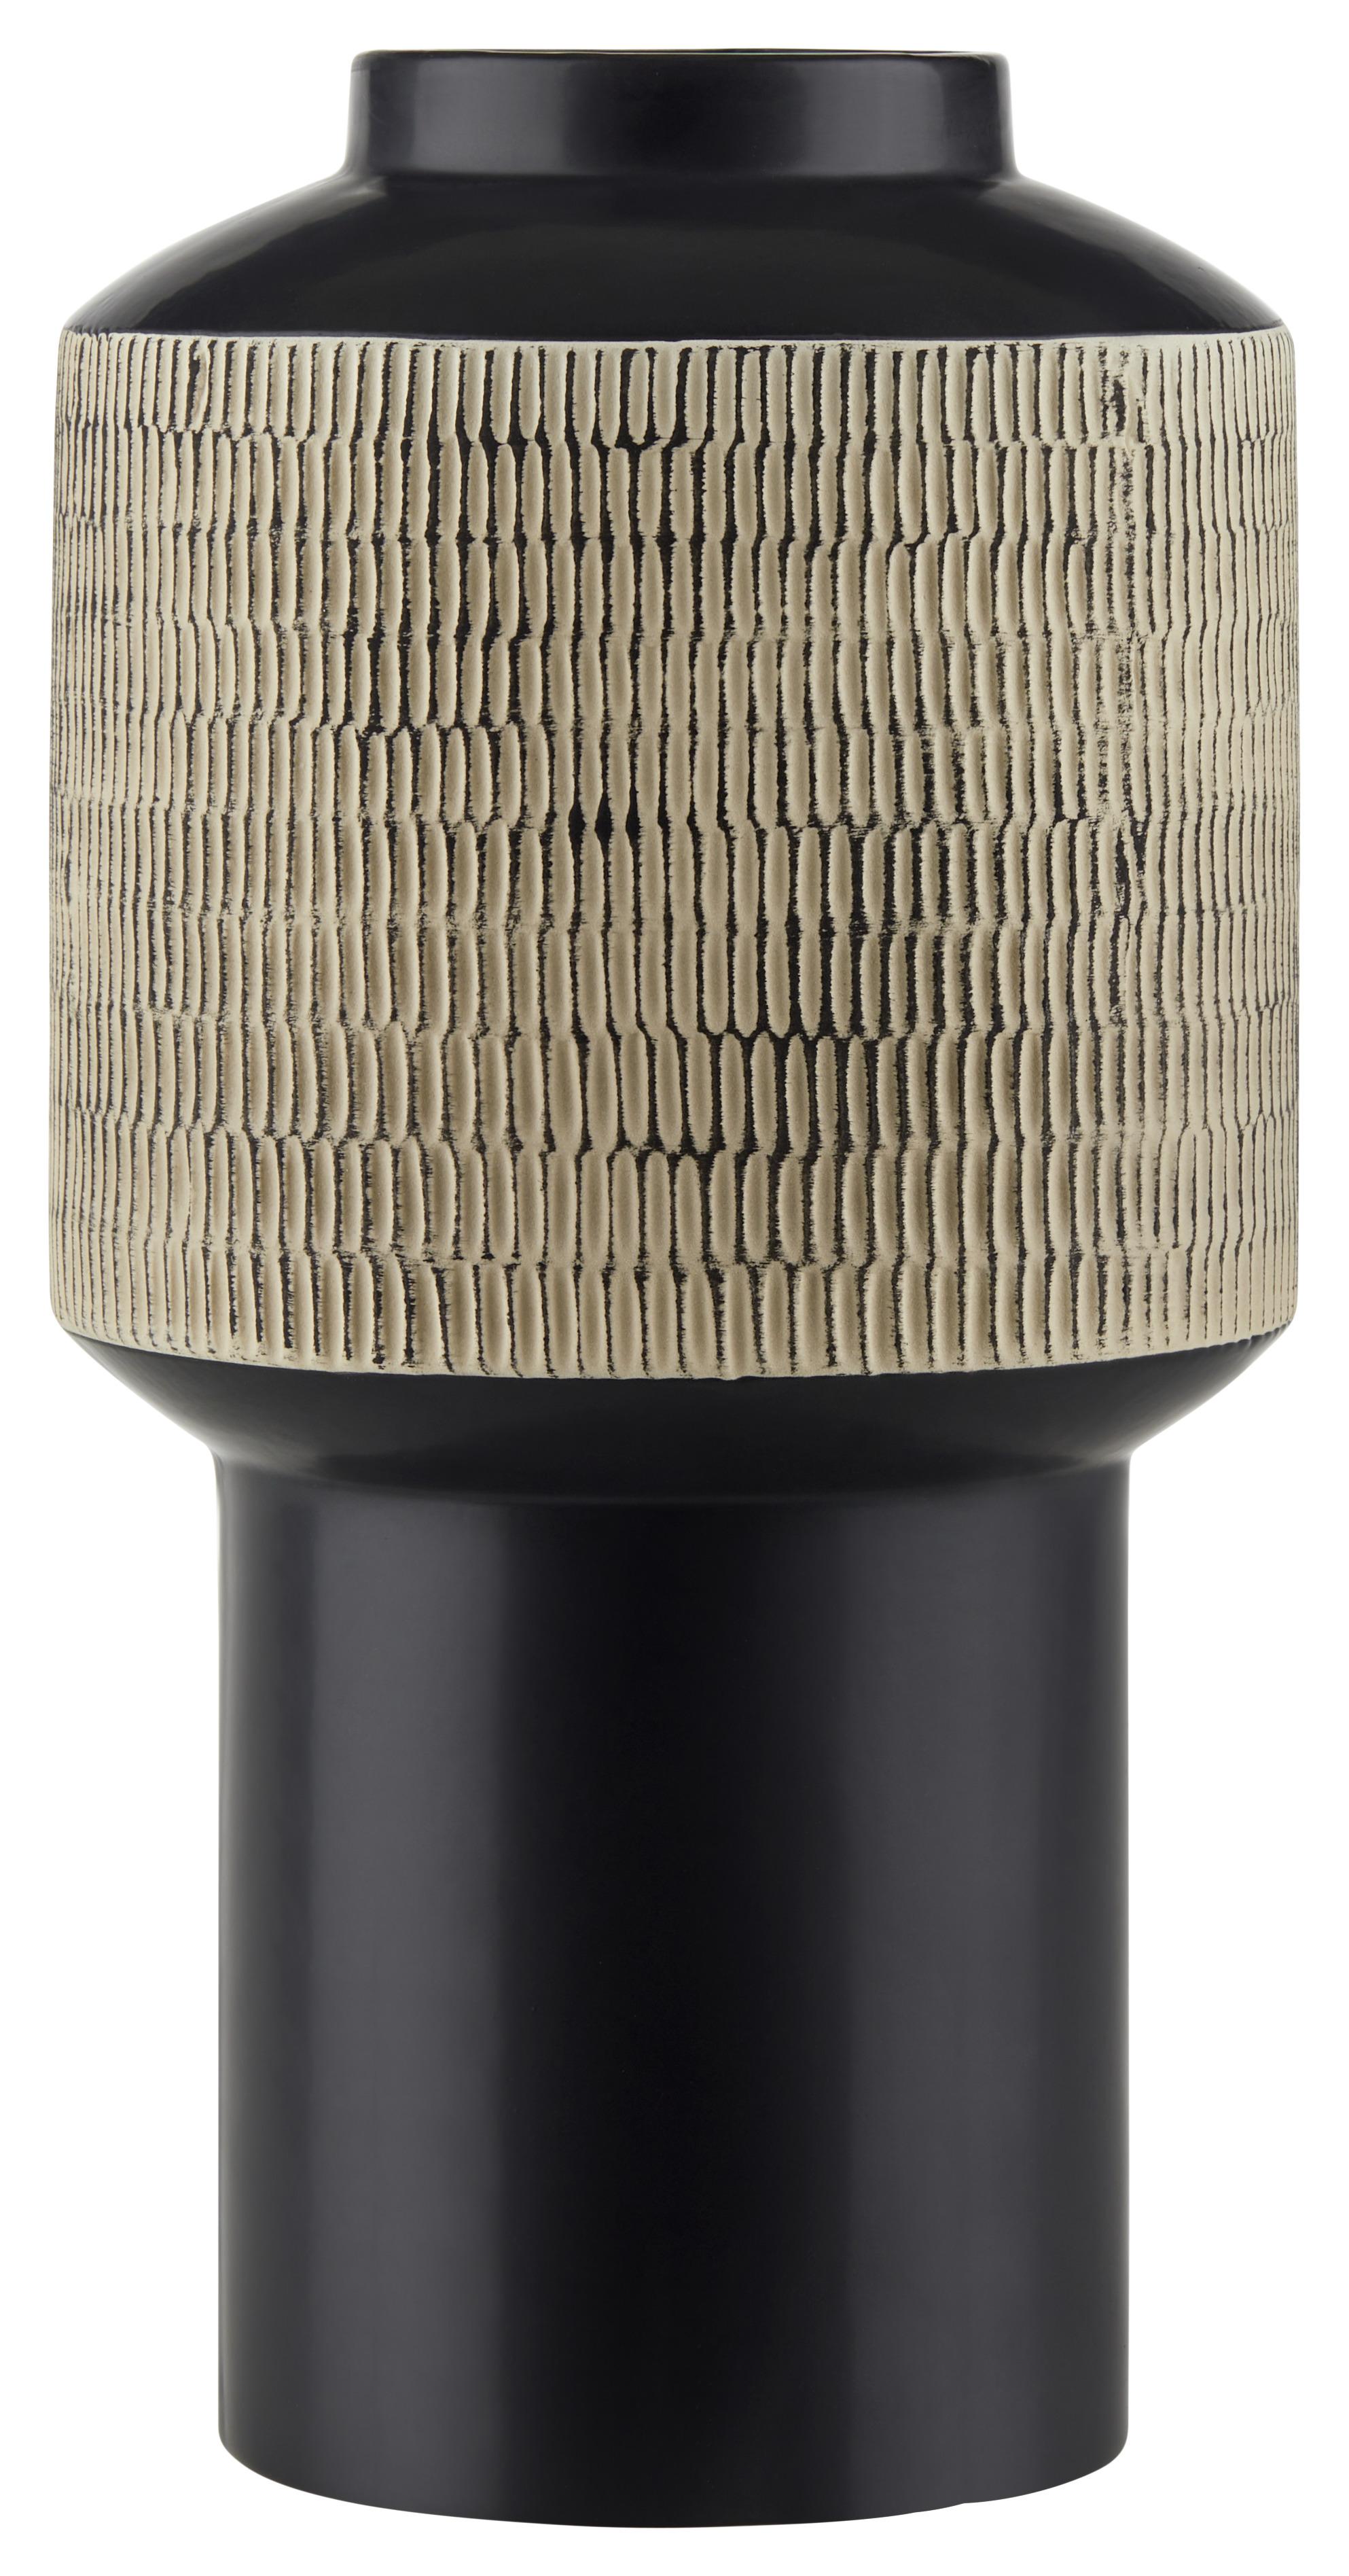 Váza Akari, V: 38cm - černá/pískové barvy, Konvenční, keramika (19,5/38cm) - Based